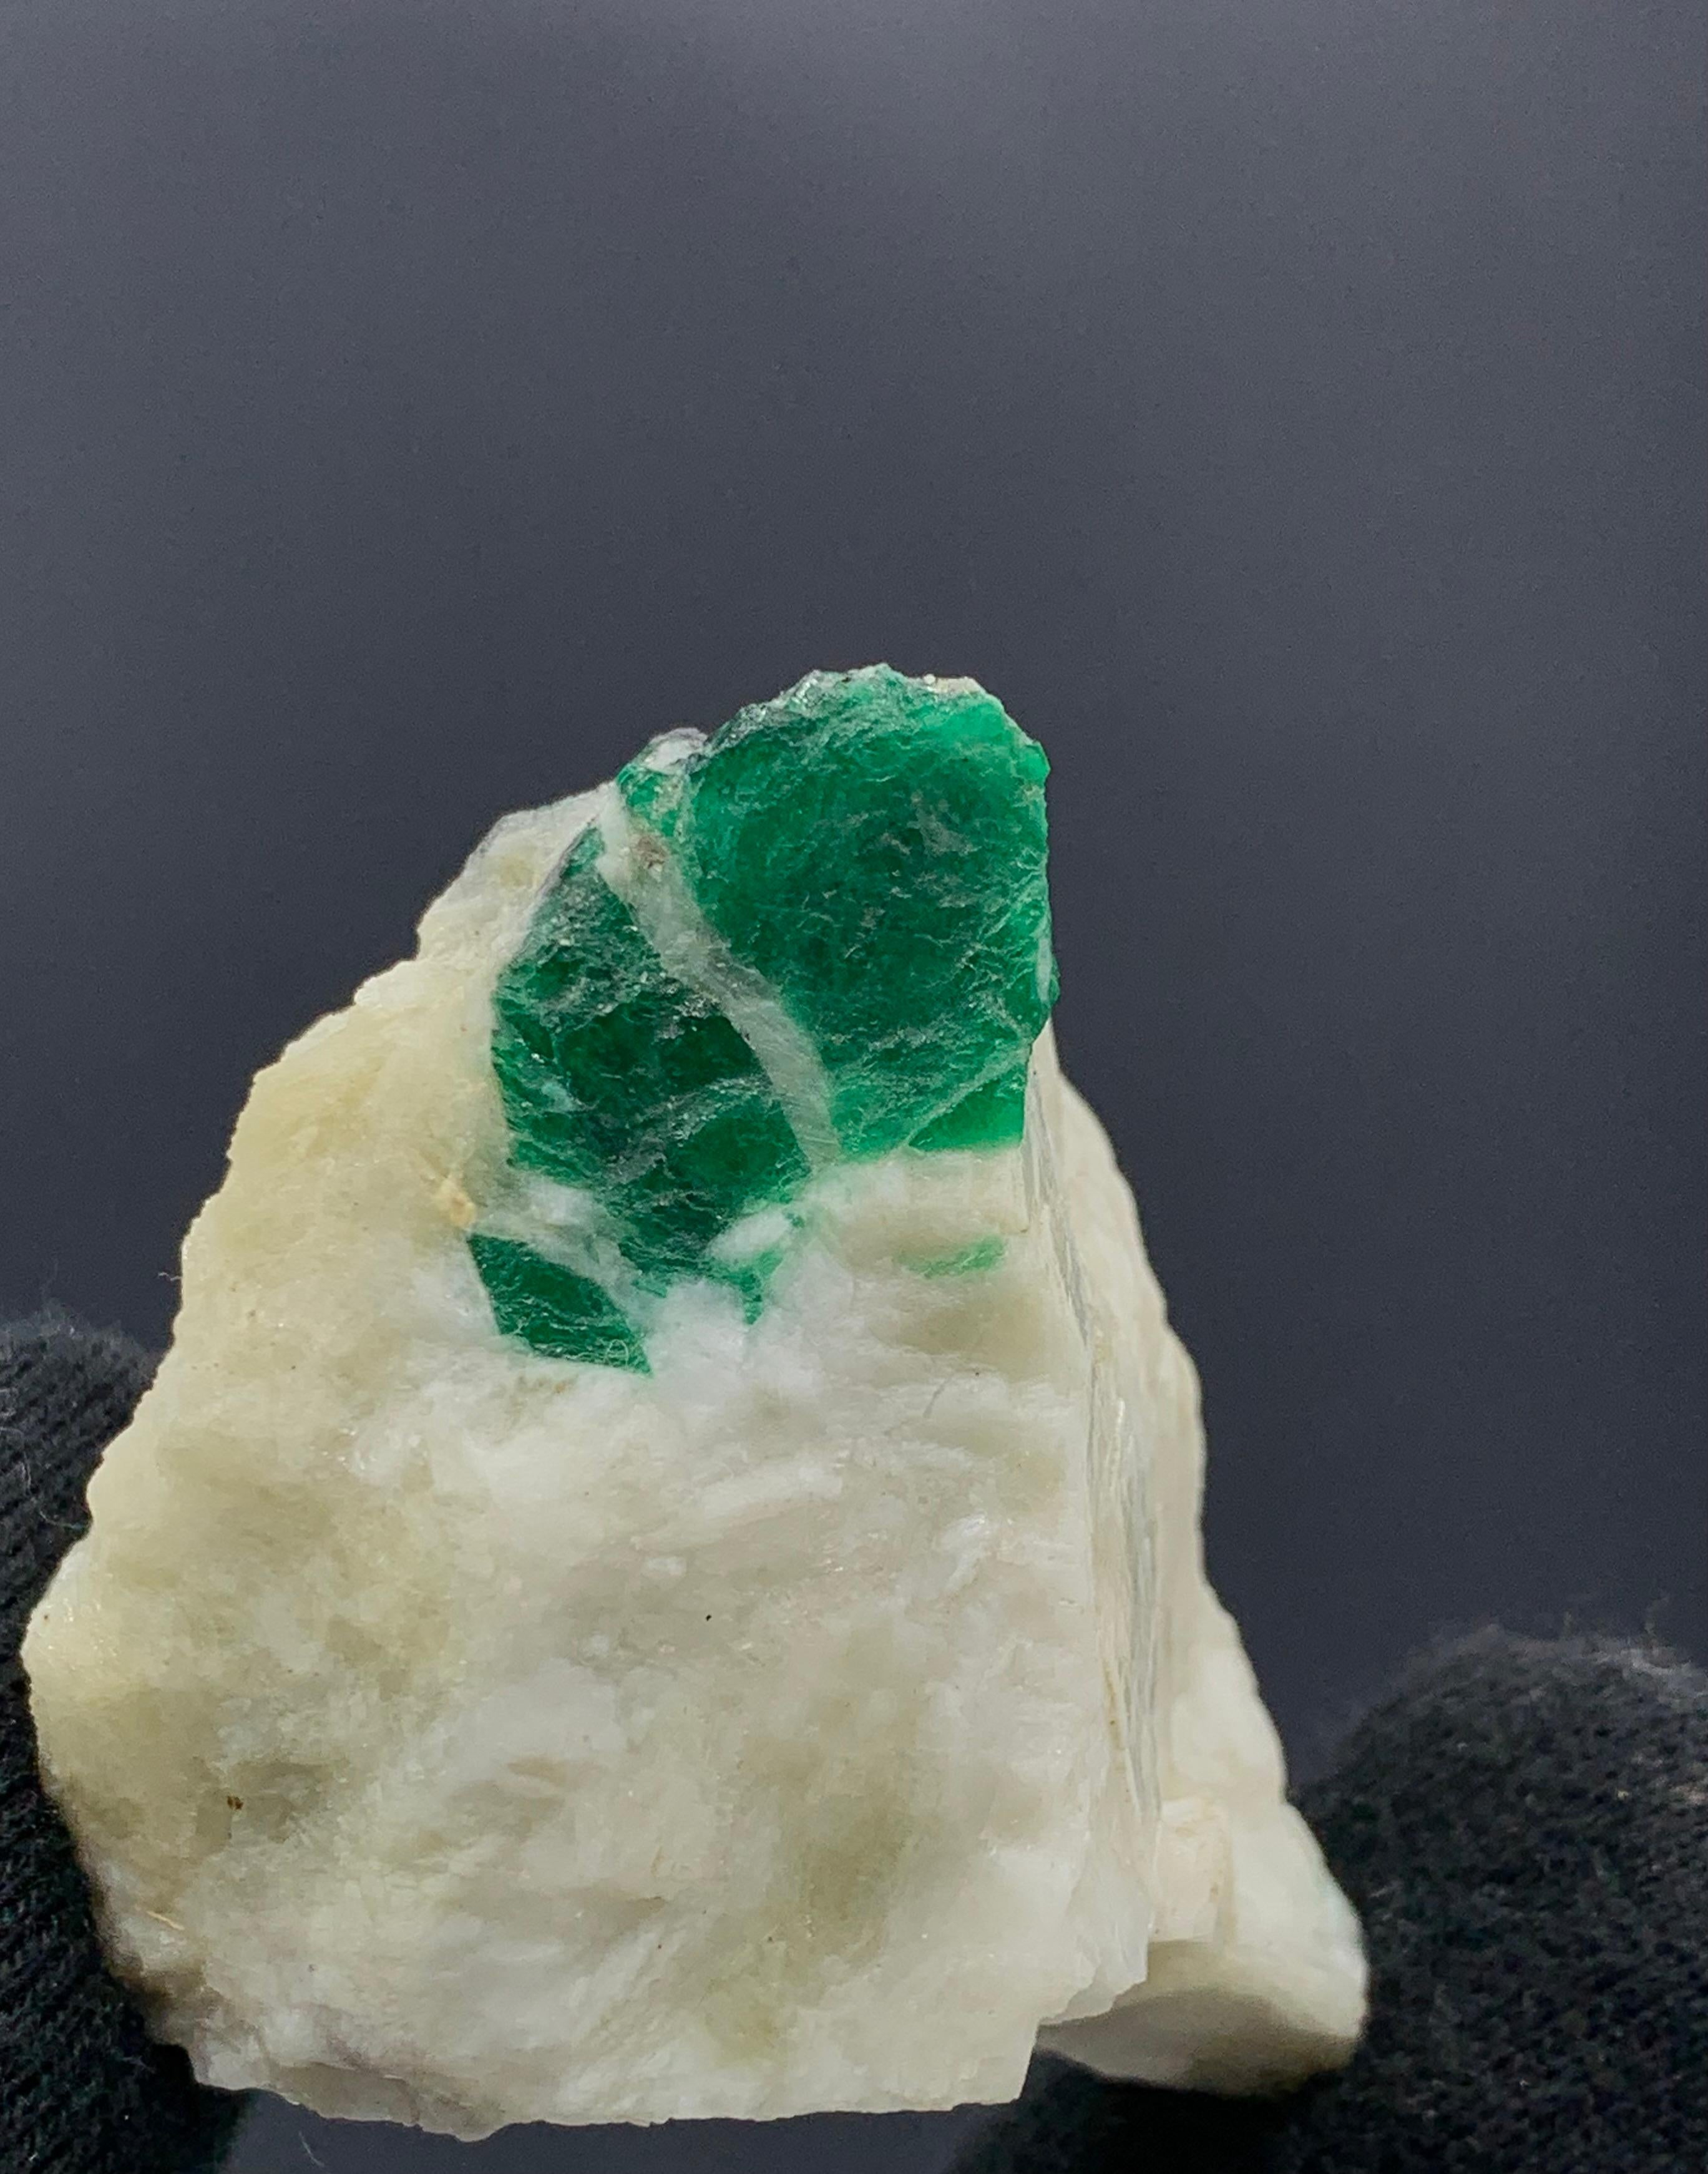 69,19 Gramm schönes Smaragd-Exemplar aus dem Swat-Tal, Pakistan 

Gewicht: 69,19 Gramm 
Abmessungen: 4.7 x 4.1 x 2.8 Cm 
Herkunft: Swat-Tal, Provinz Khyber Pukhtunkhuwa, Pakistan 

Smaragd hat die chemische Zusammensetzung Be3Al2(SiO3)6 und wird als